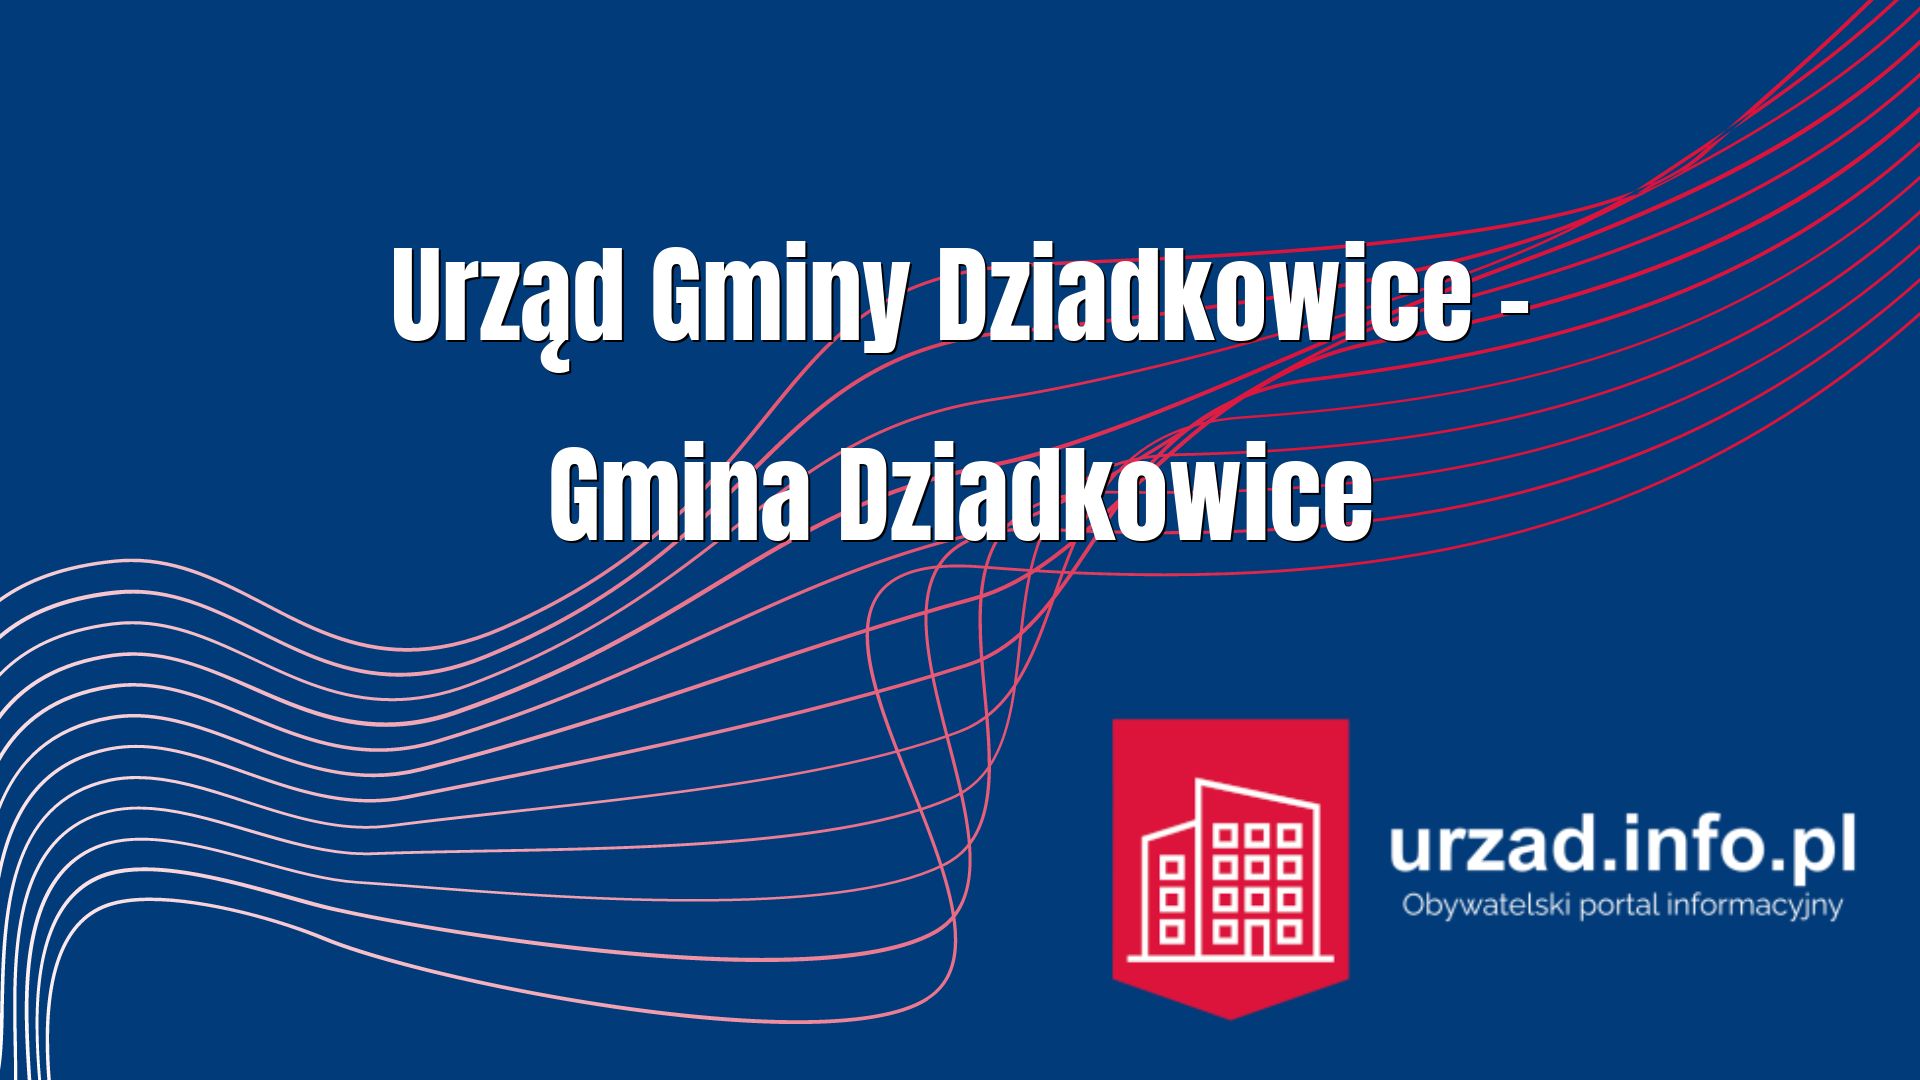 Urząd Gminy Dziadkowice – Gmina Dziadkowice